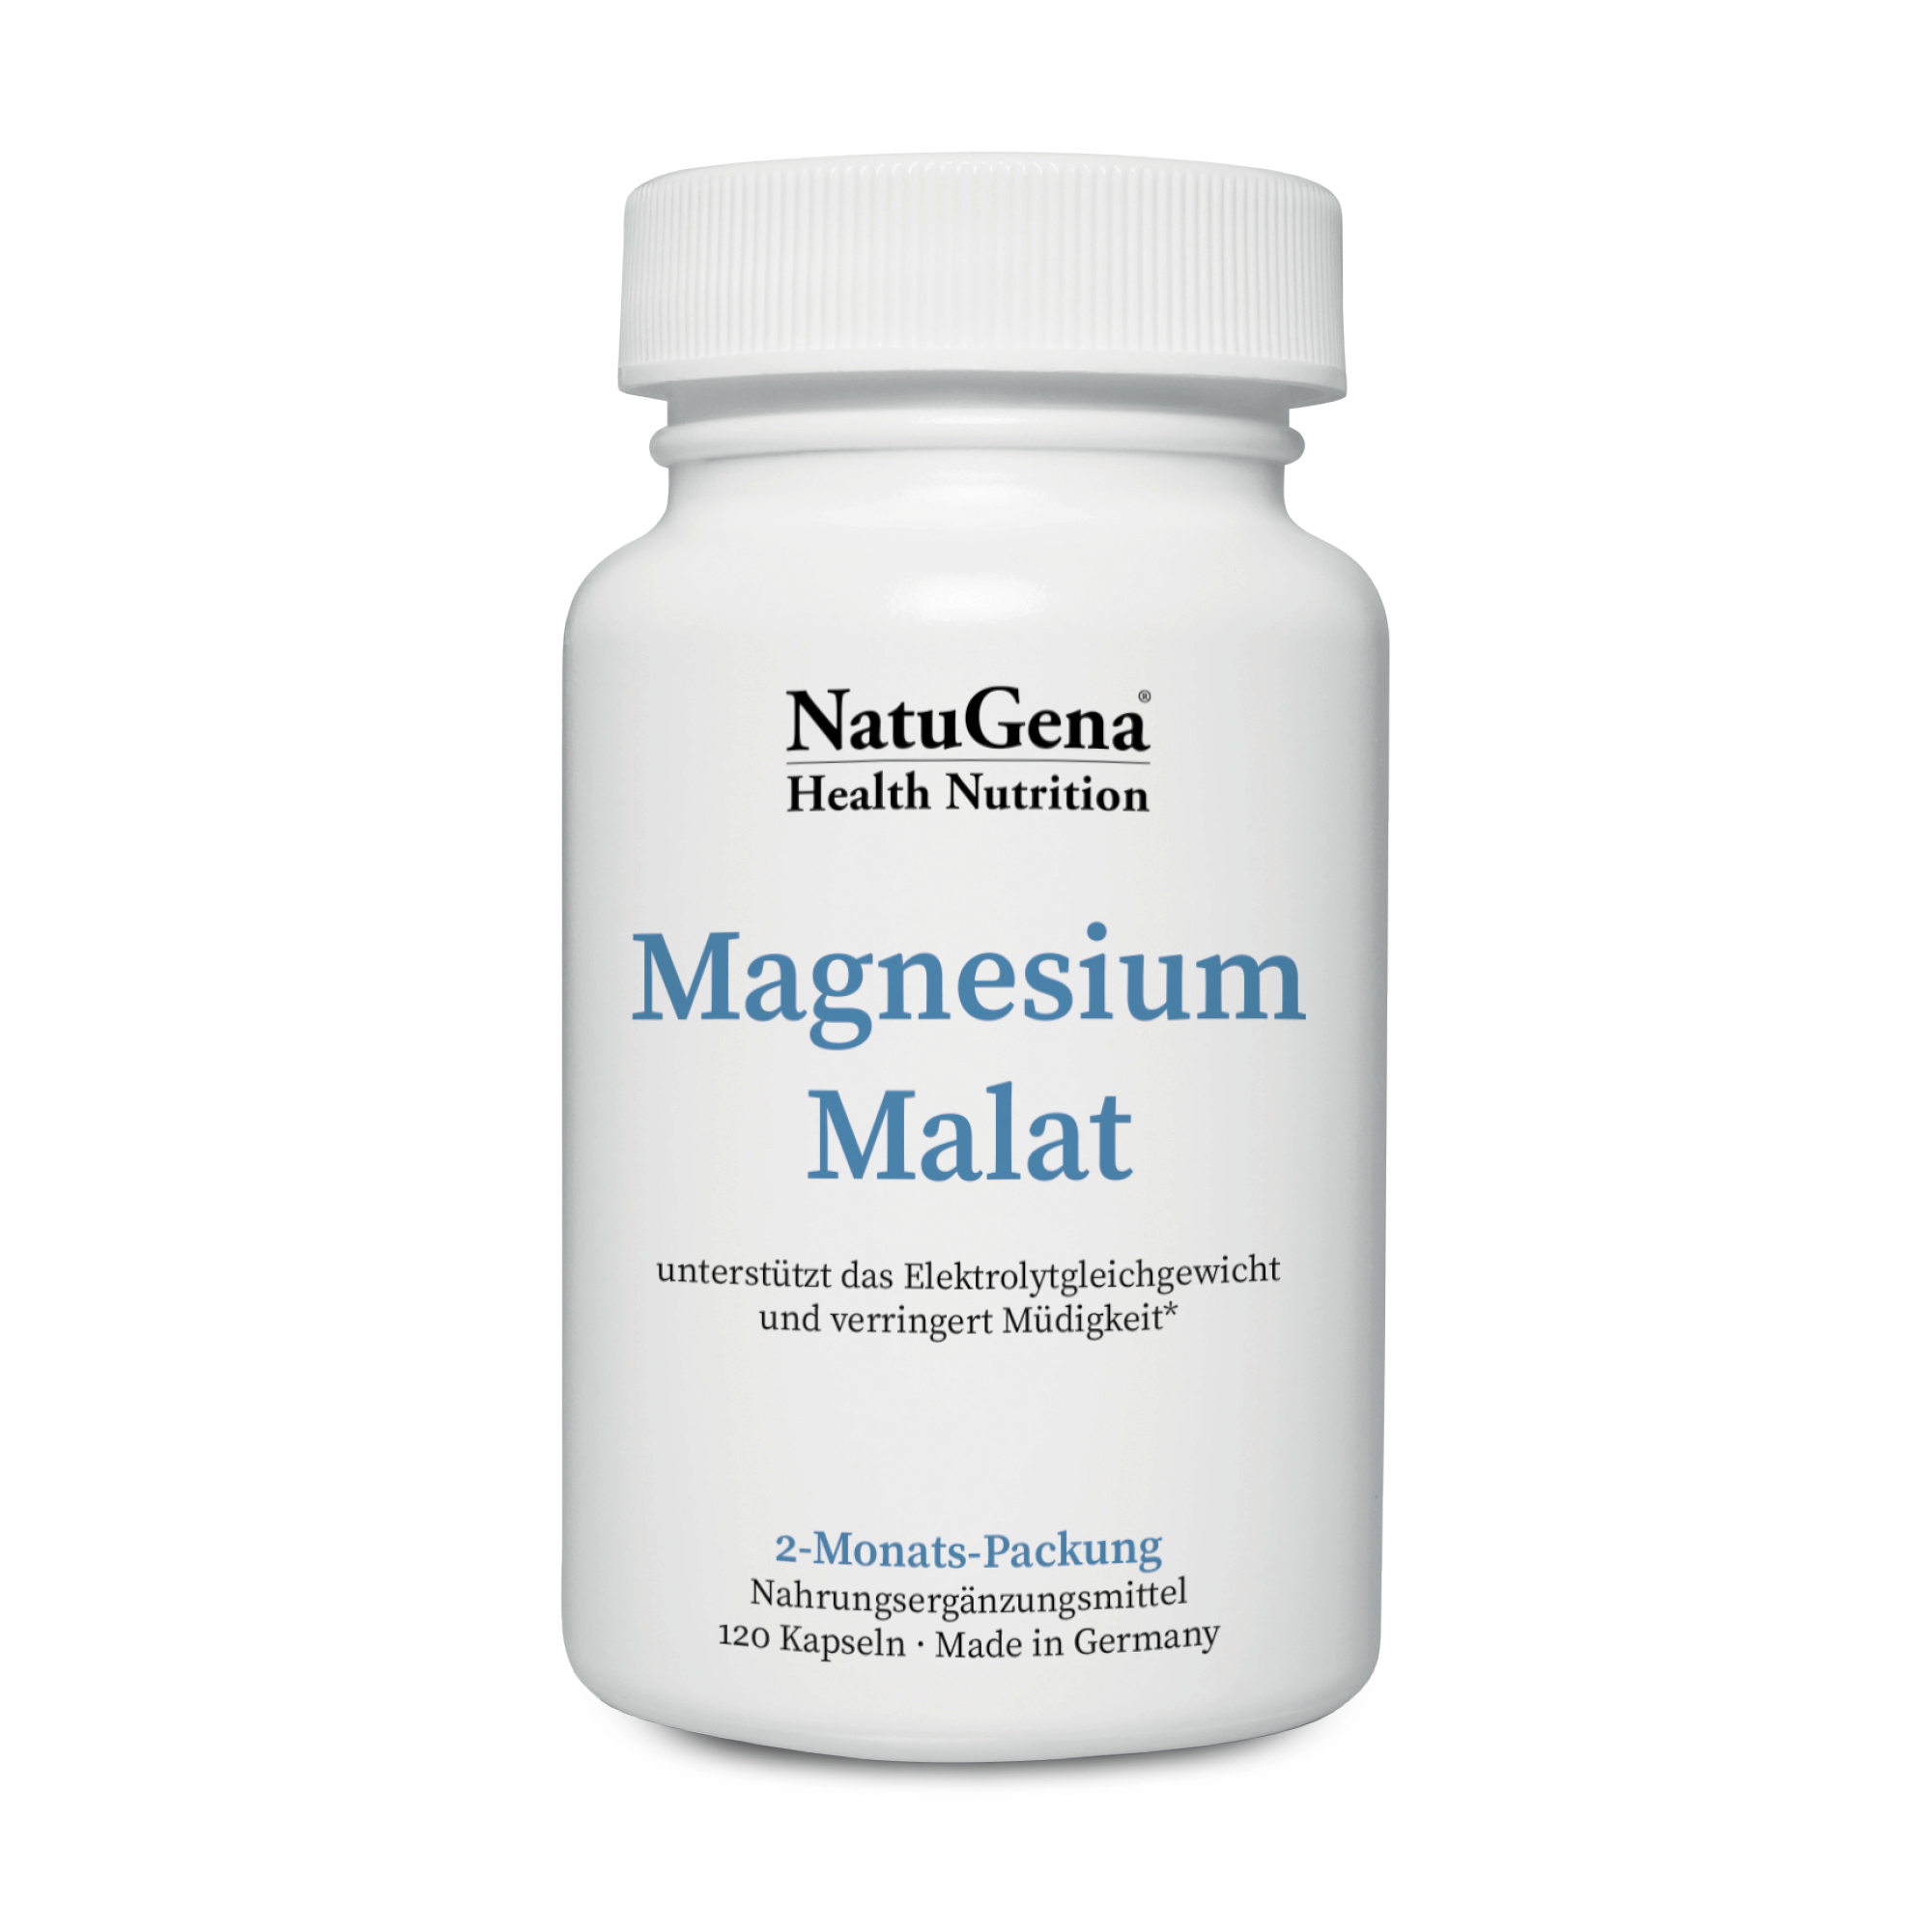 NatuGena Magnesium Malat | 120 Kapseln | Höchste Bioverfügbarkeit & Verträglichkeit für Vitalität & Wohlbefinden